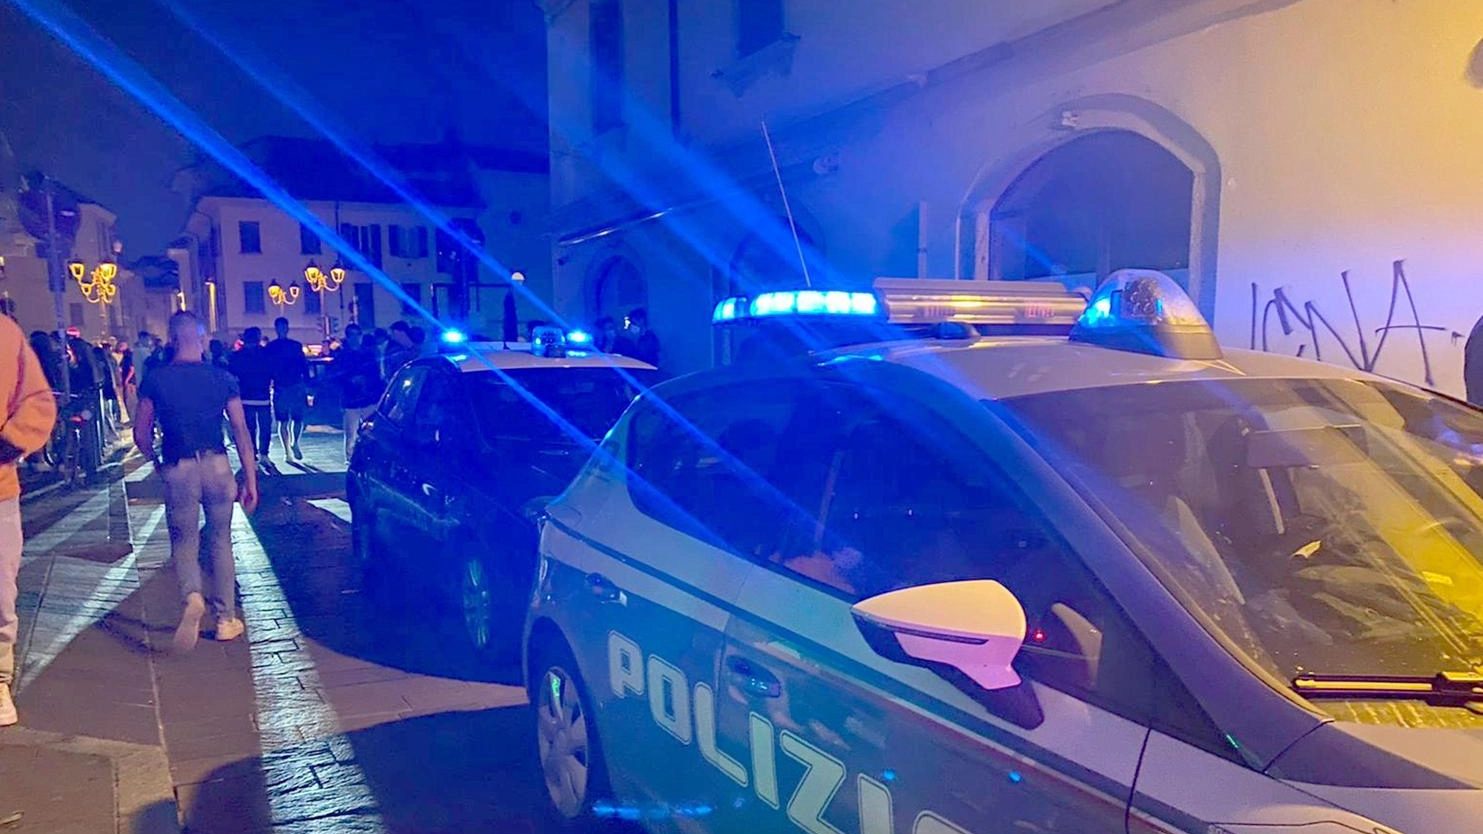 In via Bergamo la banda ha preso di mira sei giovani: a uno hanno portato via cellulare e portafogli. La polizia riesce a bloccare e arrestare due maggiorenni, caccia ai due complici minorenni.